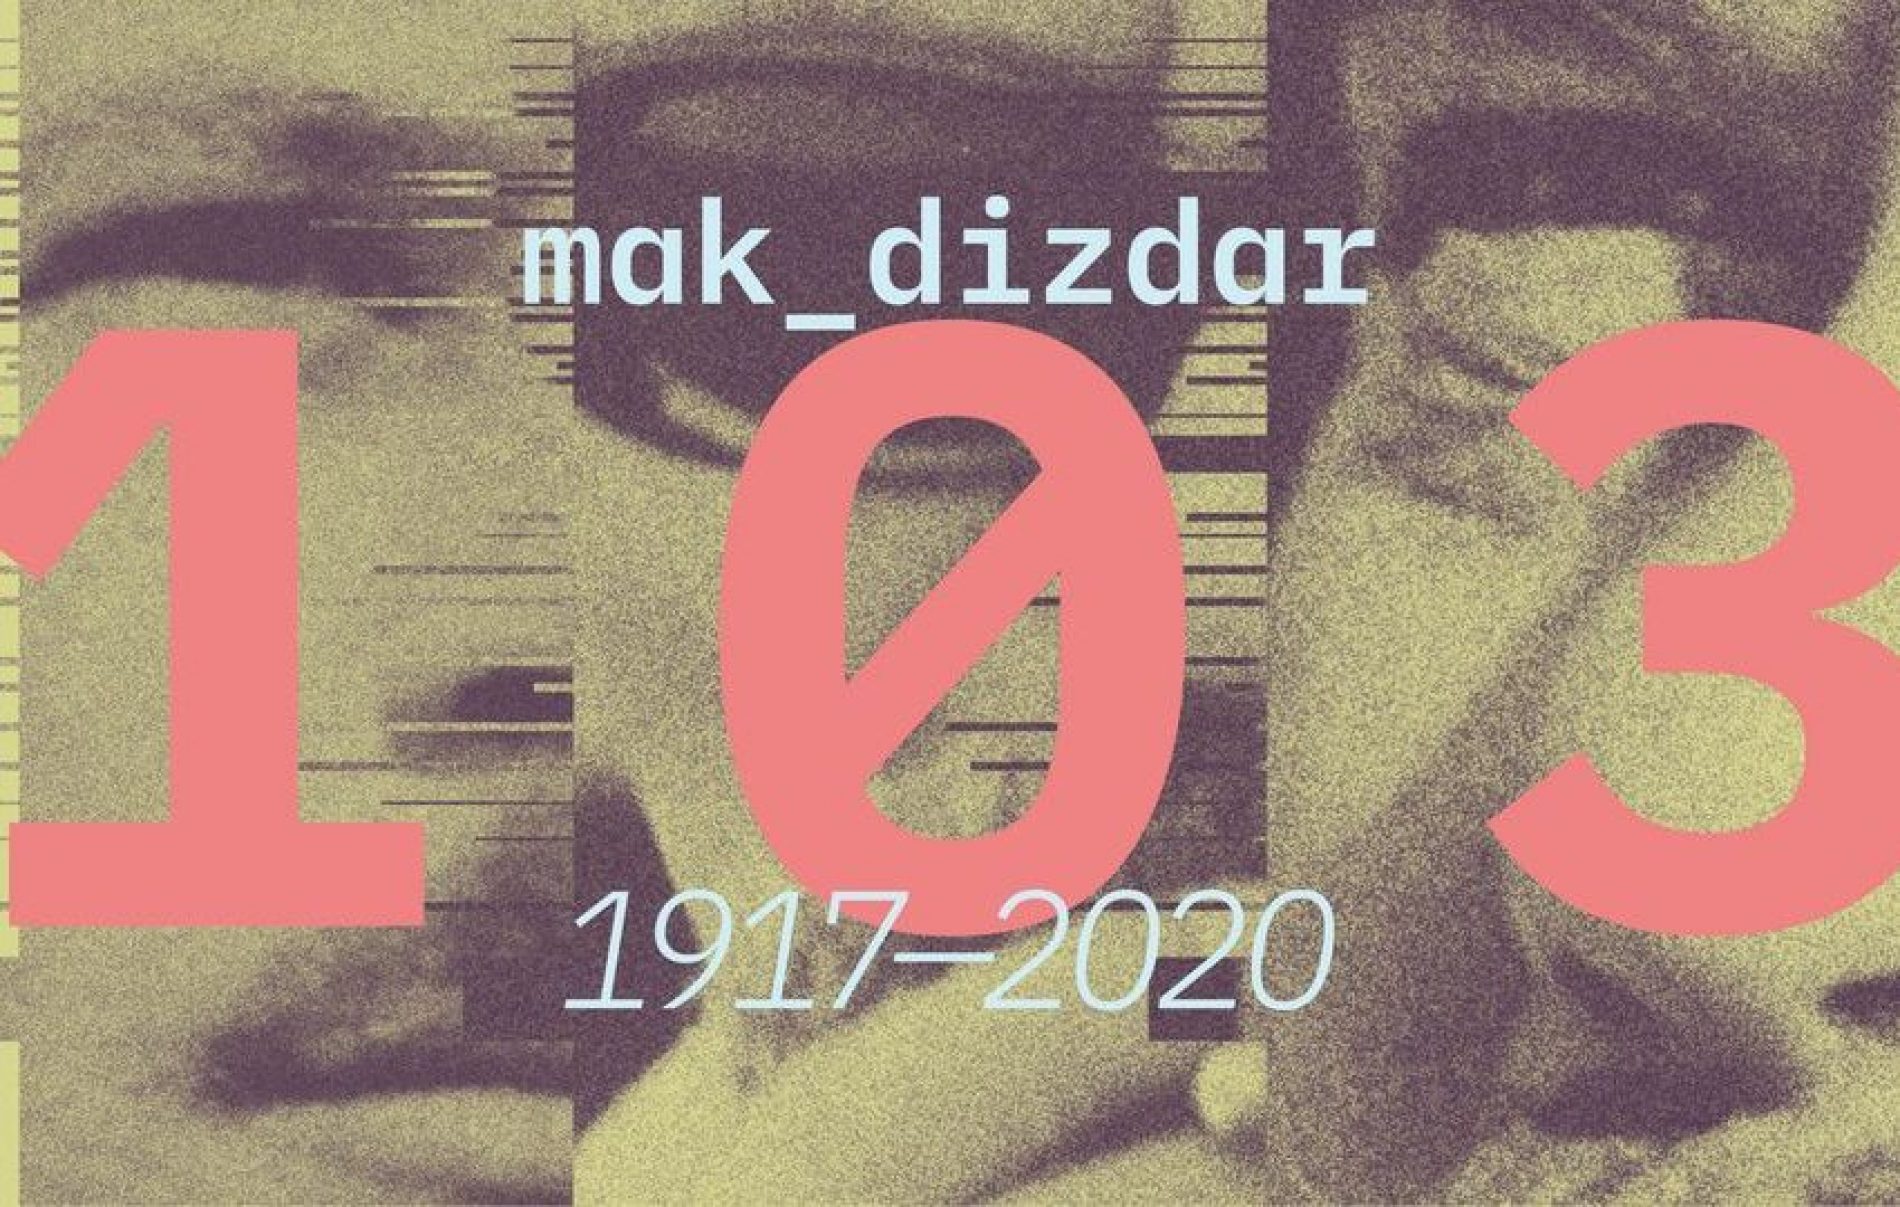 VIJEĆNICA: Obilježavanje  godišnjice rođenja Maka Dizdara